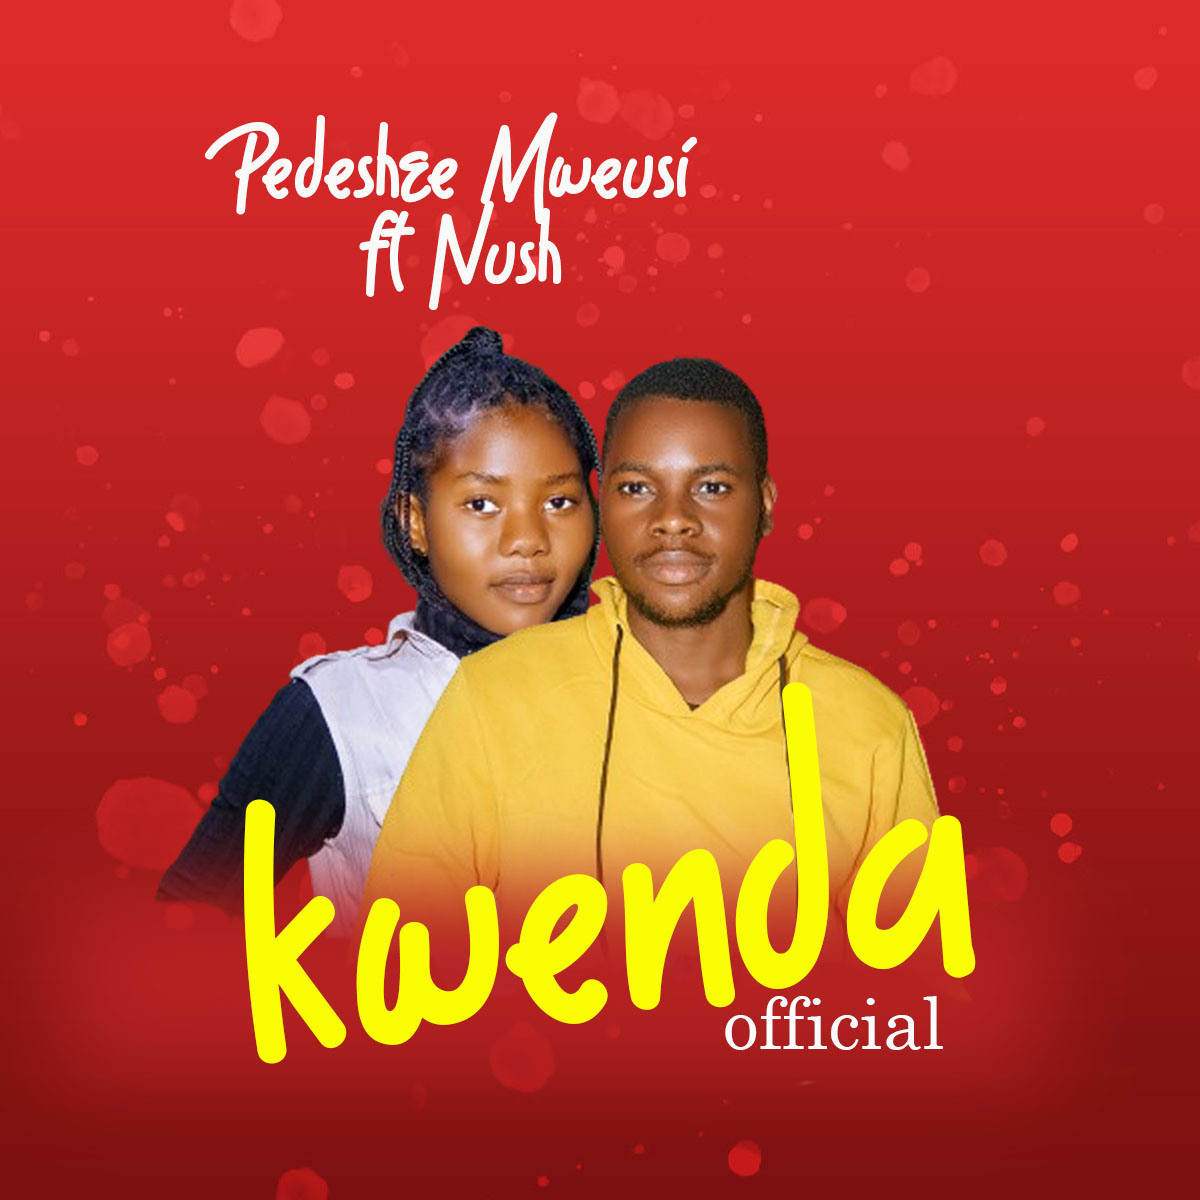  Pedeshee Mweusi Ft. Nush – Kwenda